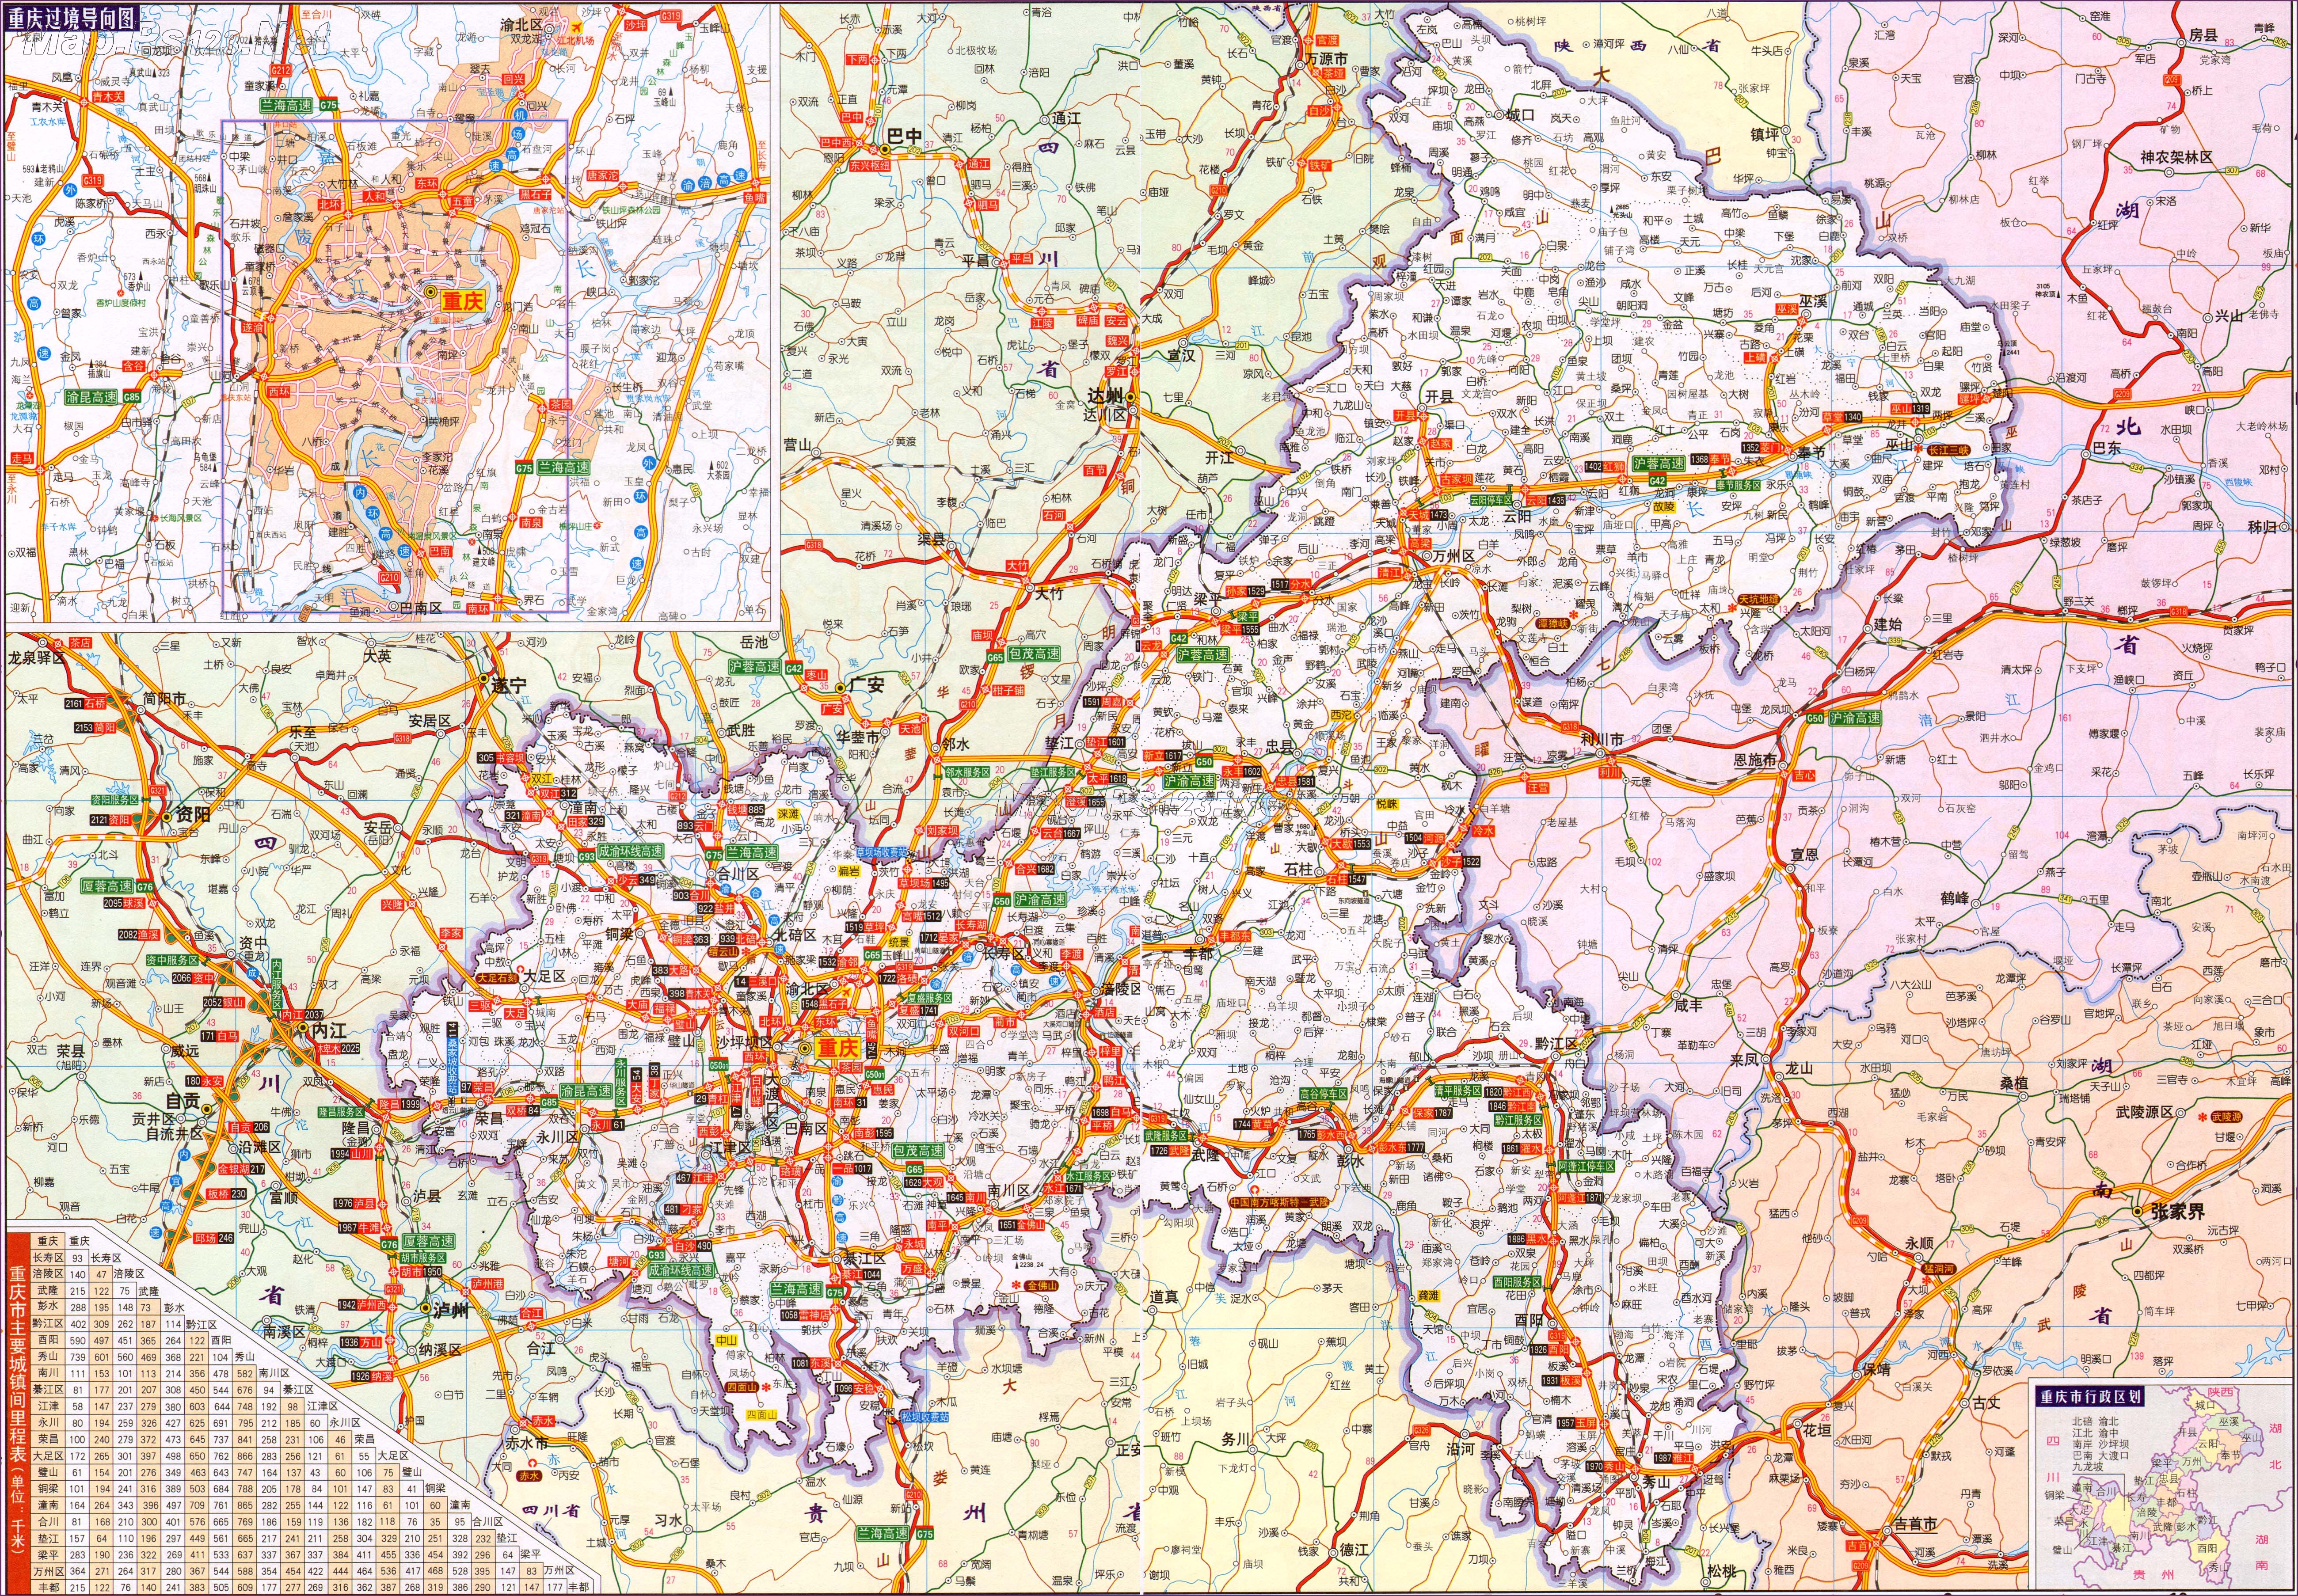 上一幅地图: 重庆市北部交通地图 | 重庆 | 下一幅地图: 重庆市区交图片